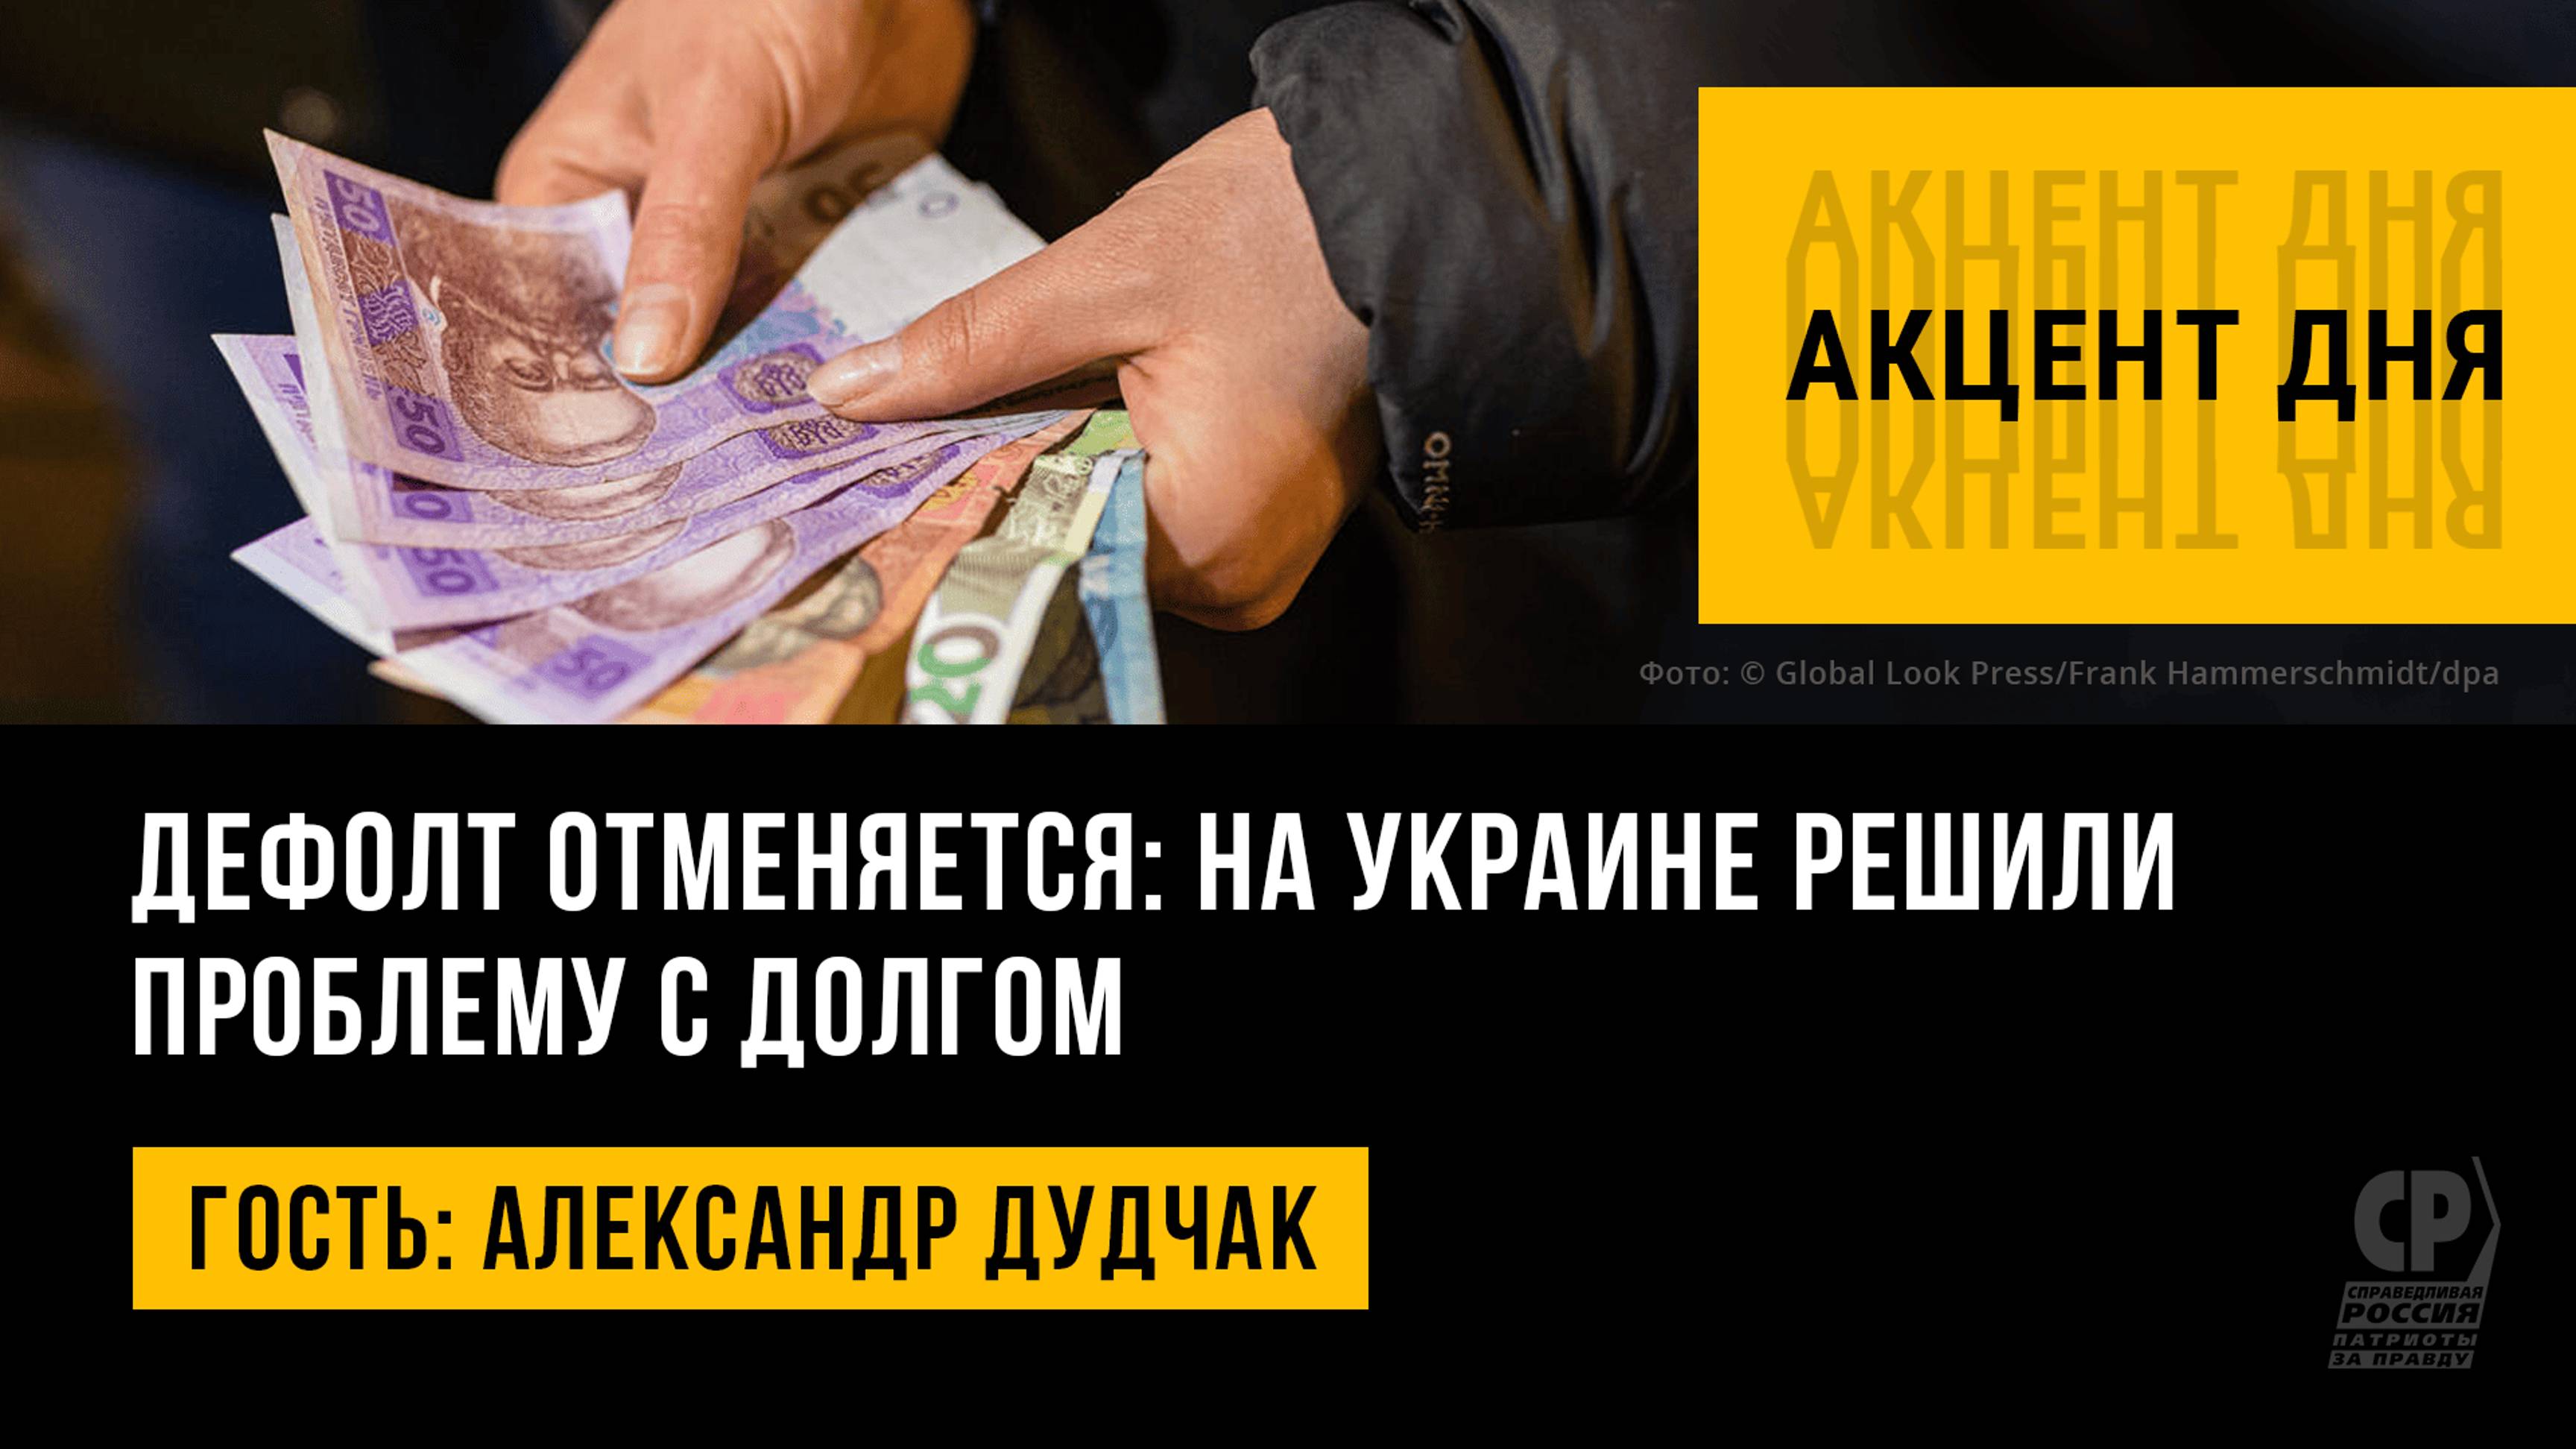 Дефолт отменяется: на Украине решили проблему с долгом. Александр Дудчак